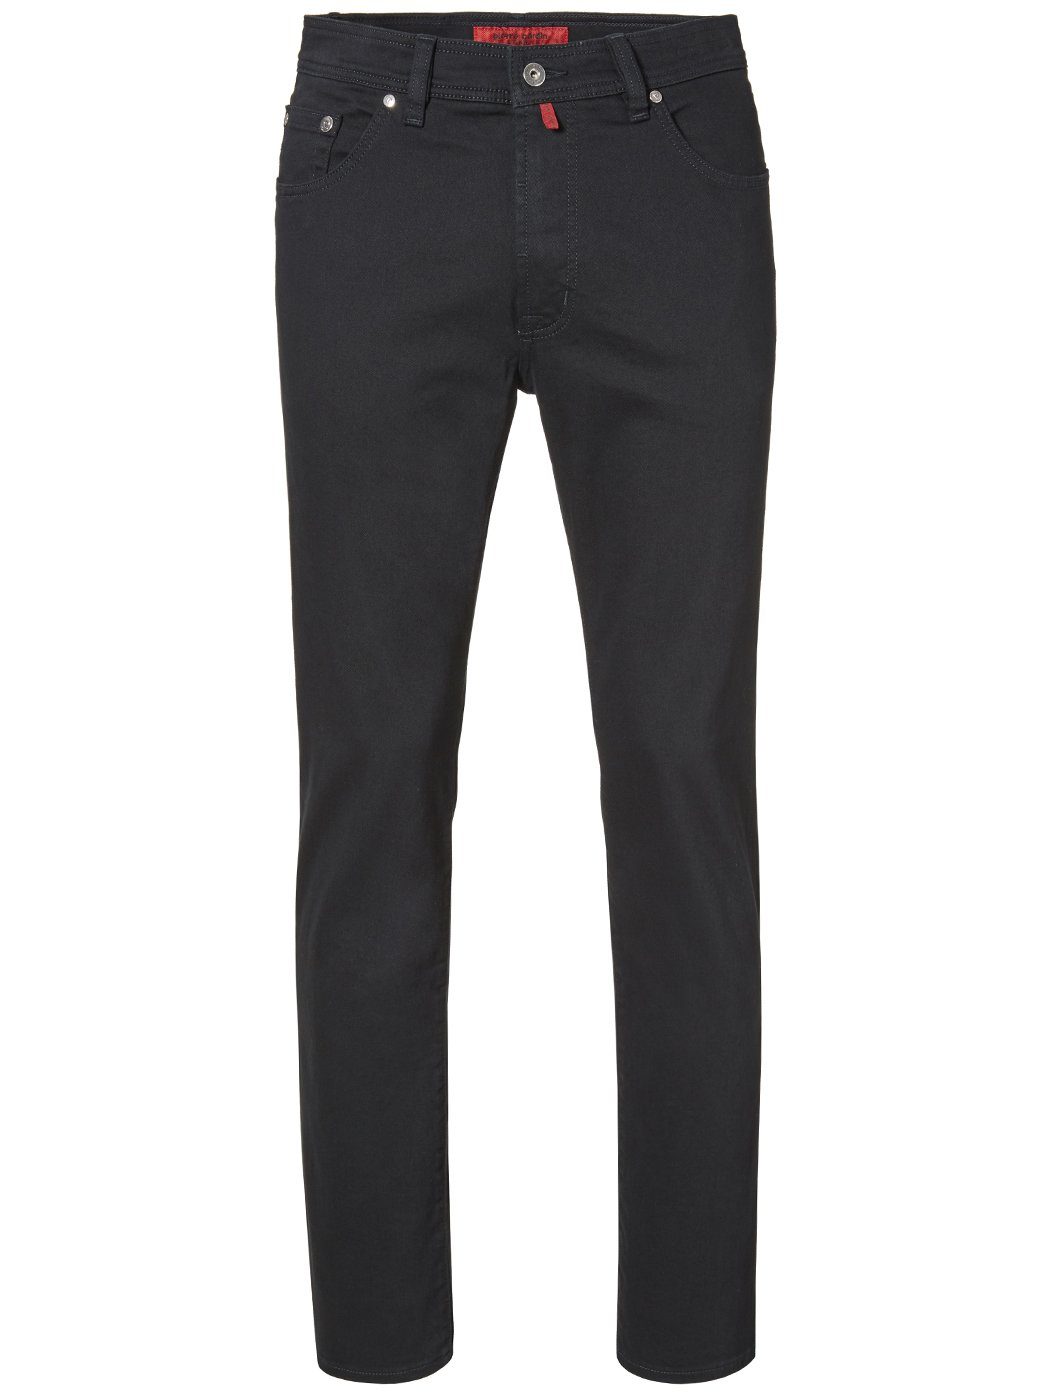 Pierre Cardin 5-Pocket-Jeans PIERRE CARDIN DIJON black star 3880 122.05 Konfektionsgröße/Übergrößen